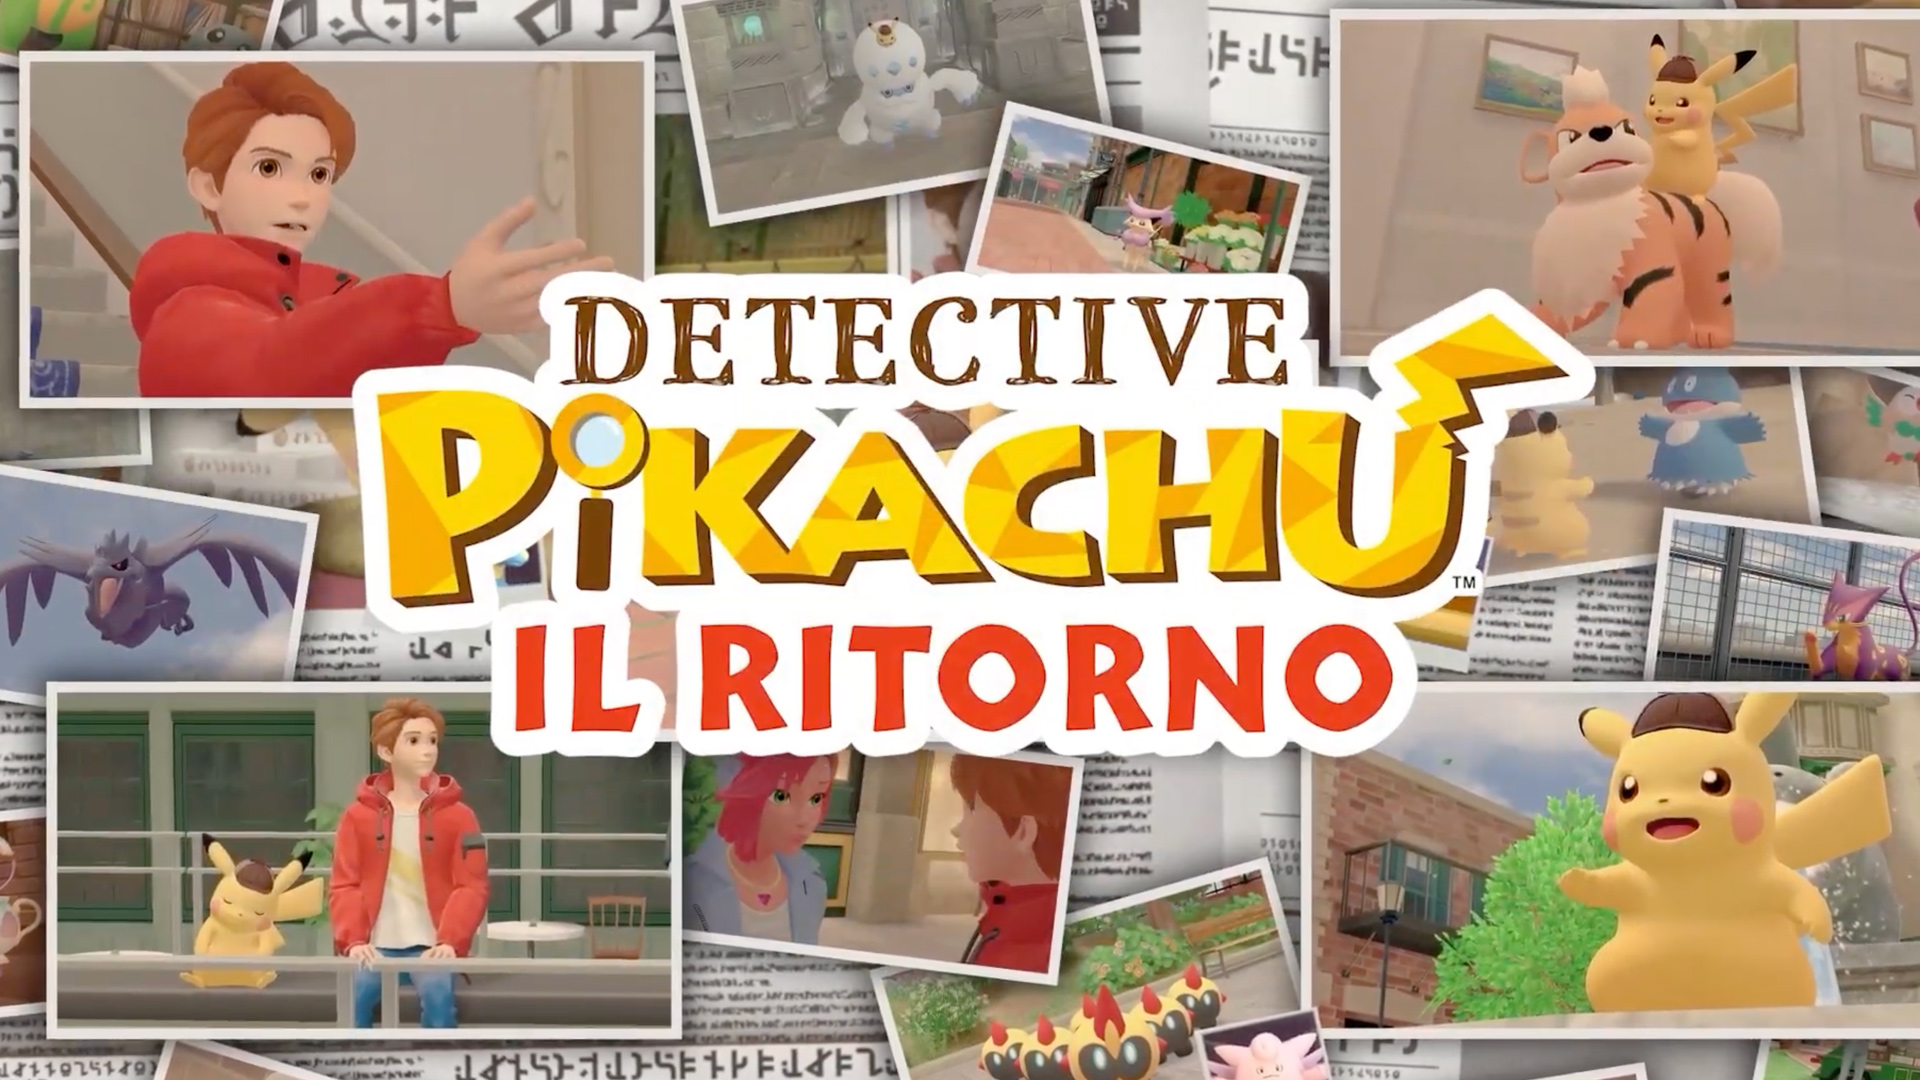 Detective Pikachu: il Ritorno si mostra in un nuovo trailer